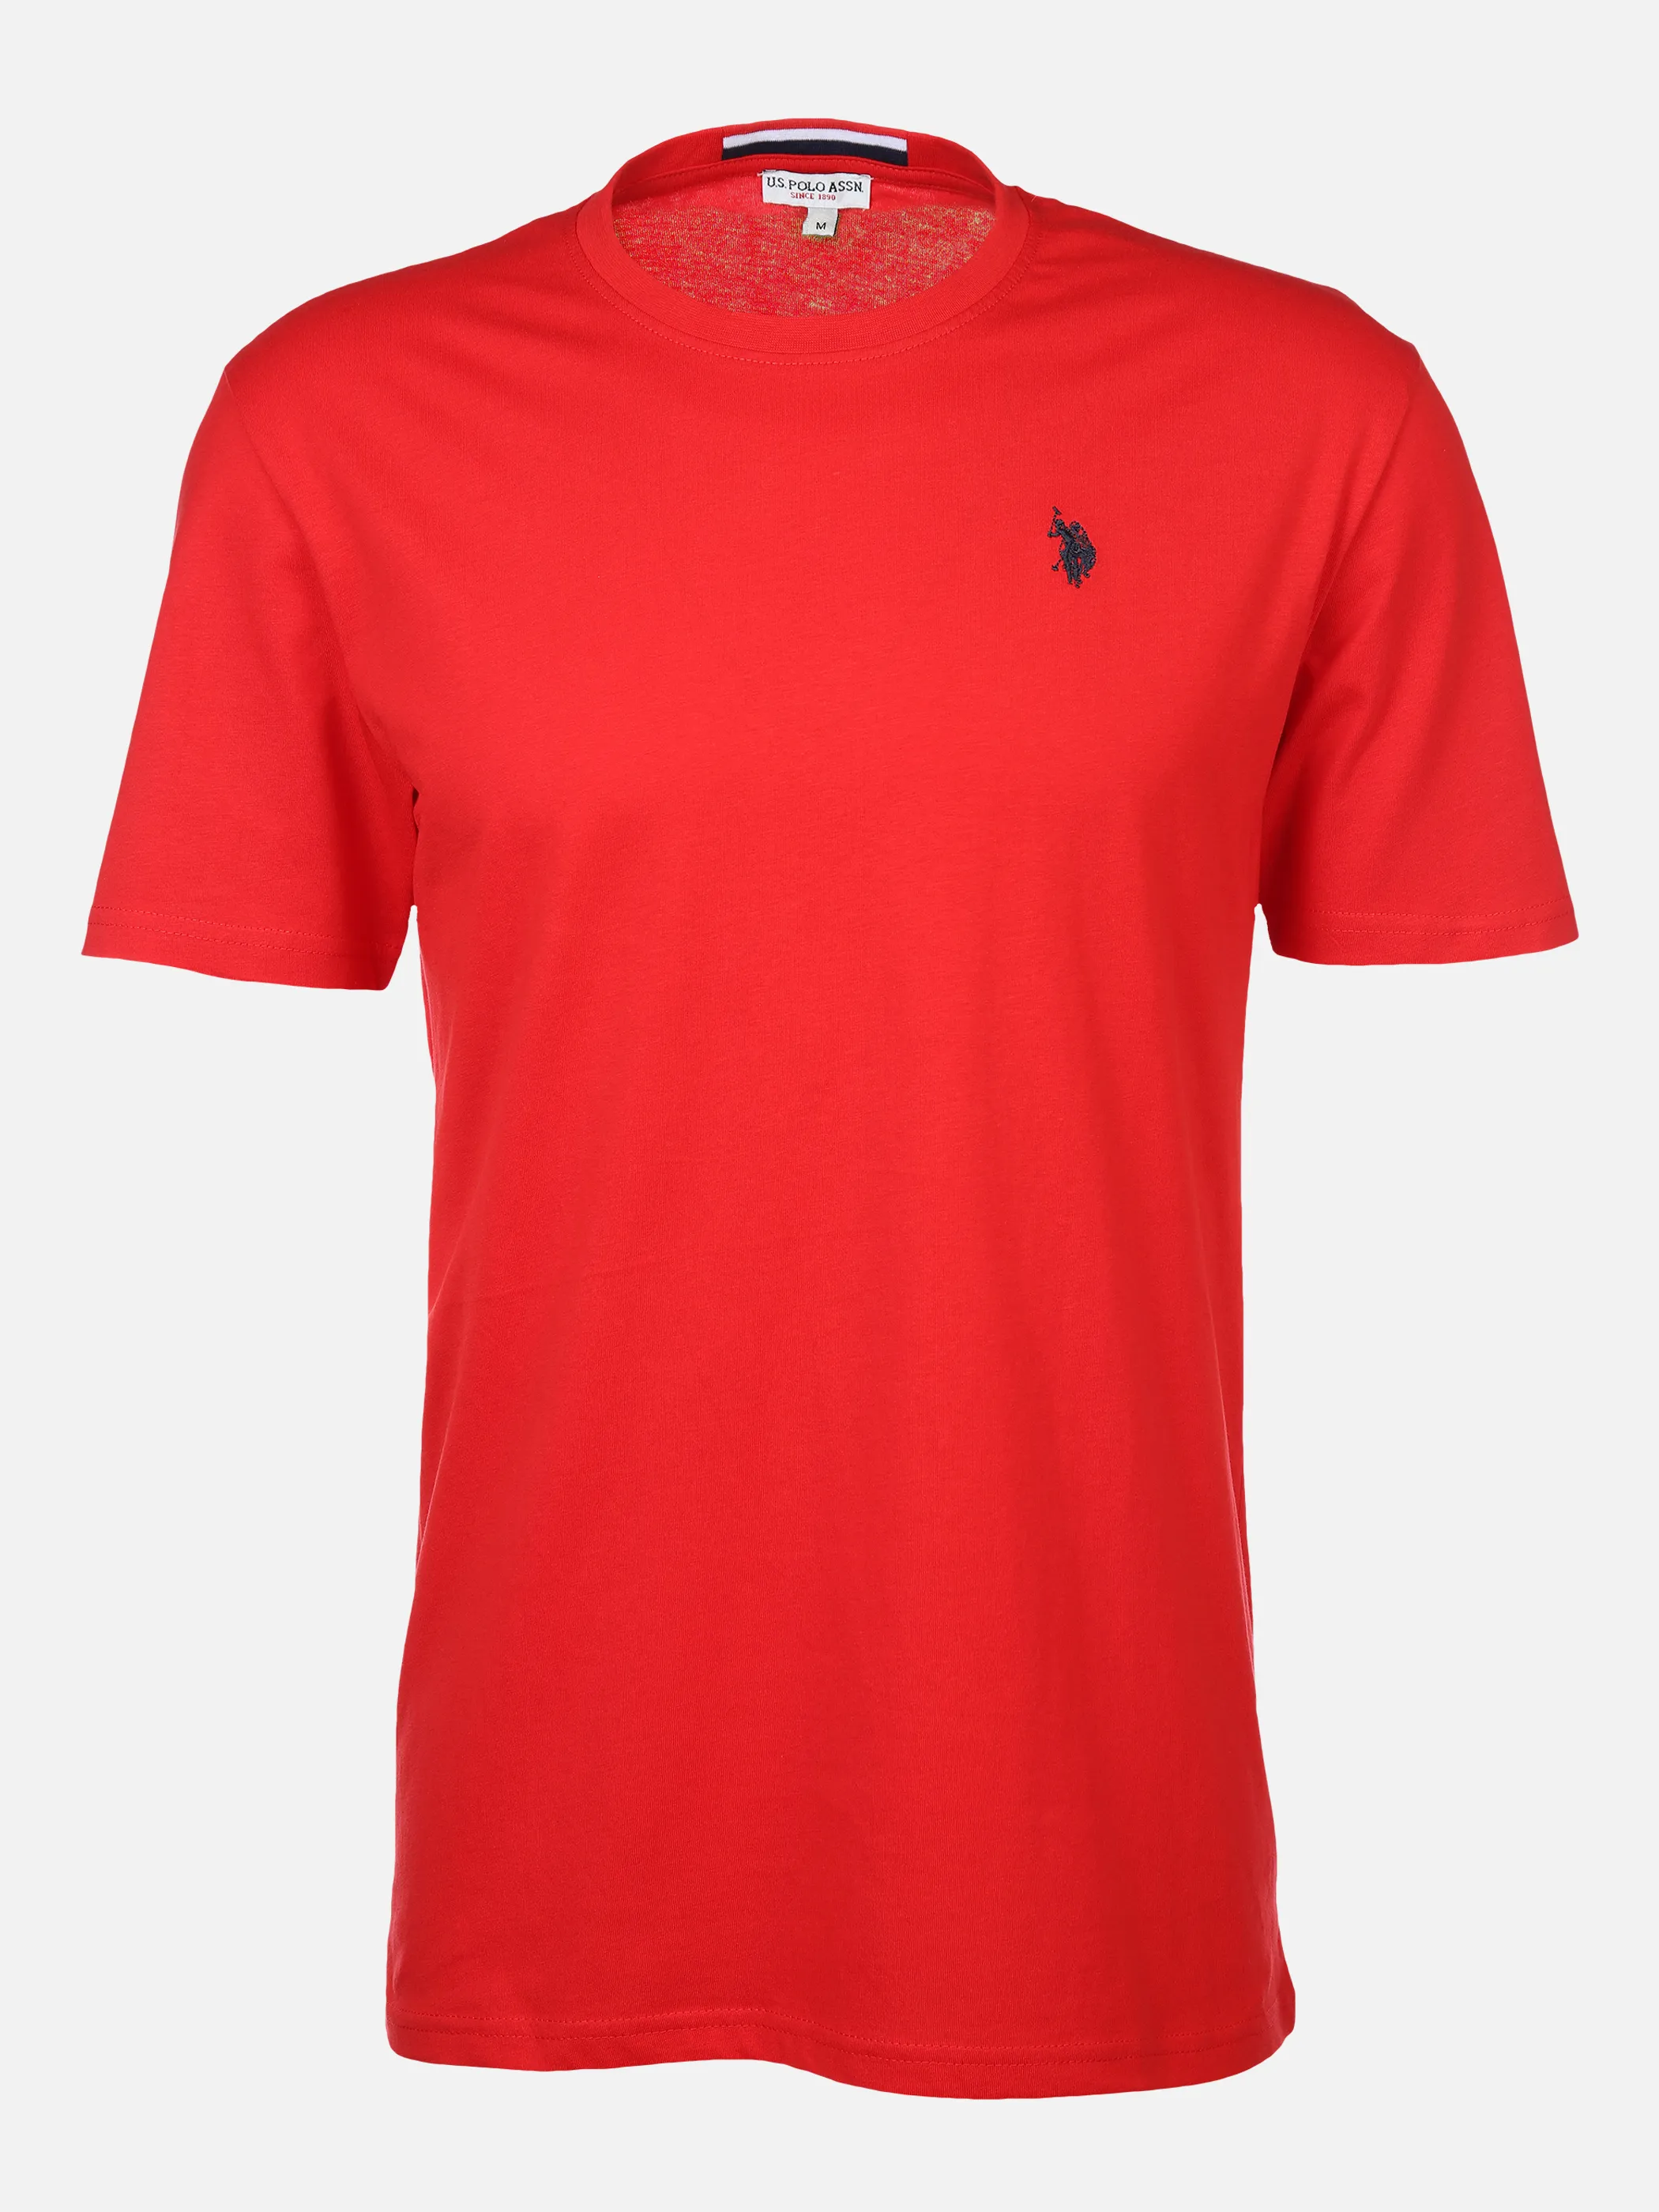 U.S. Polo Assn. He. T-Shirt 1/2 Arm Logostickerei Rot 882065 RED 1